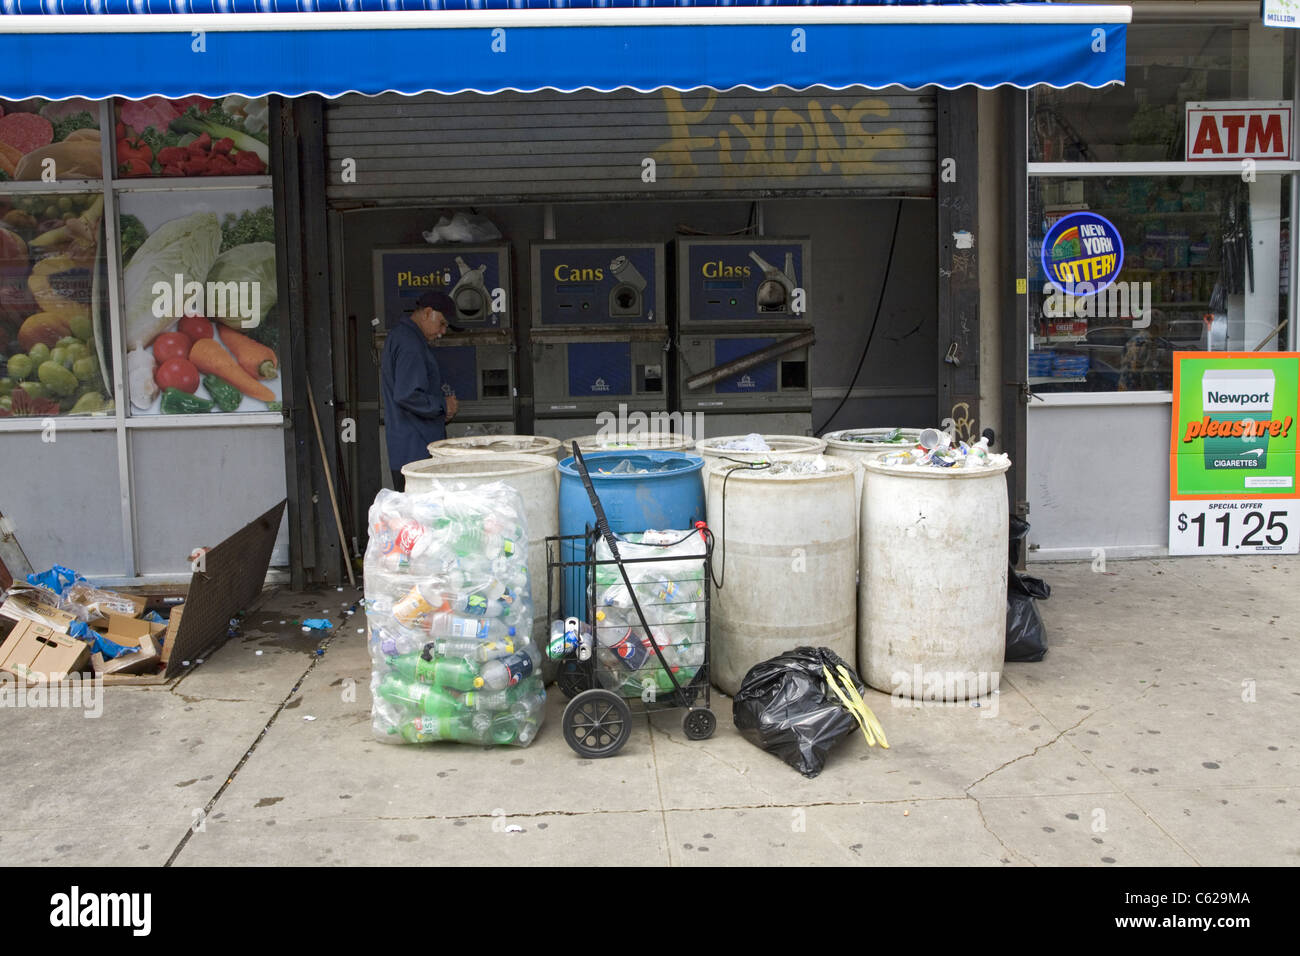 Distributori automatici dove bottiglia i collezionisti possono scambiare alluminio, vetro e plastica per contanti. Flatbush Avenue, Brooklyn, New York. Foto Stock